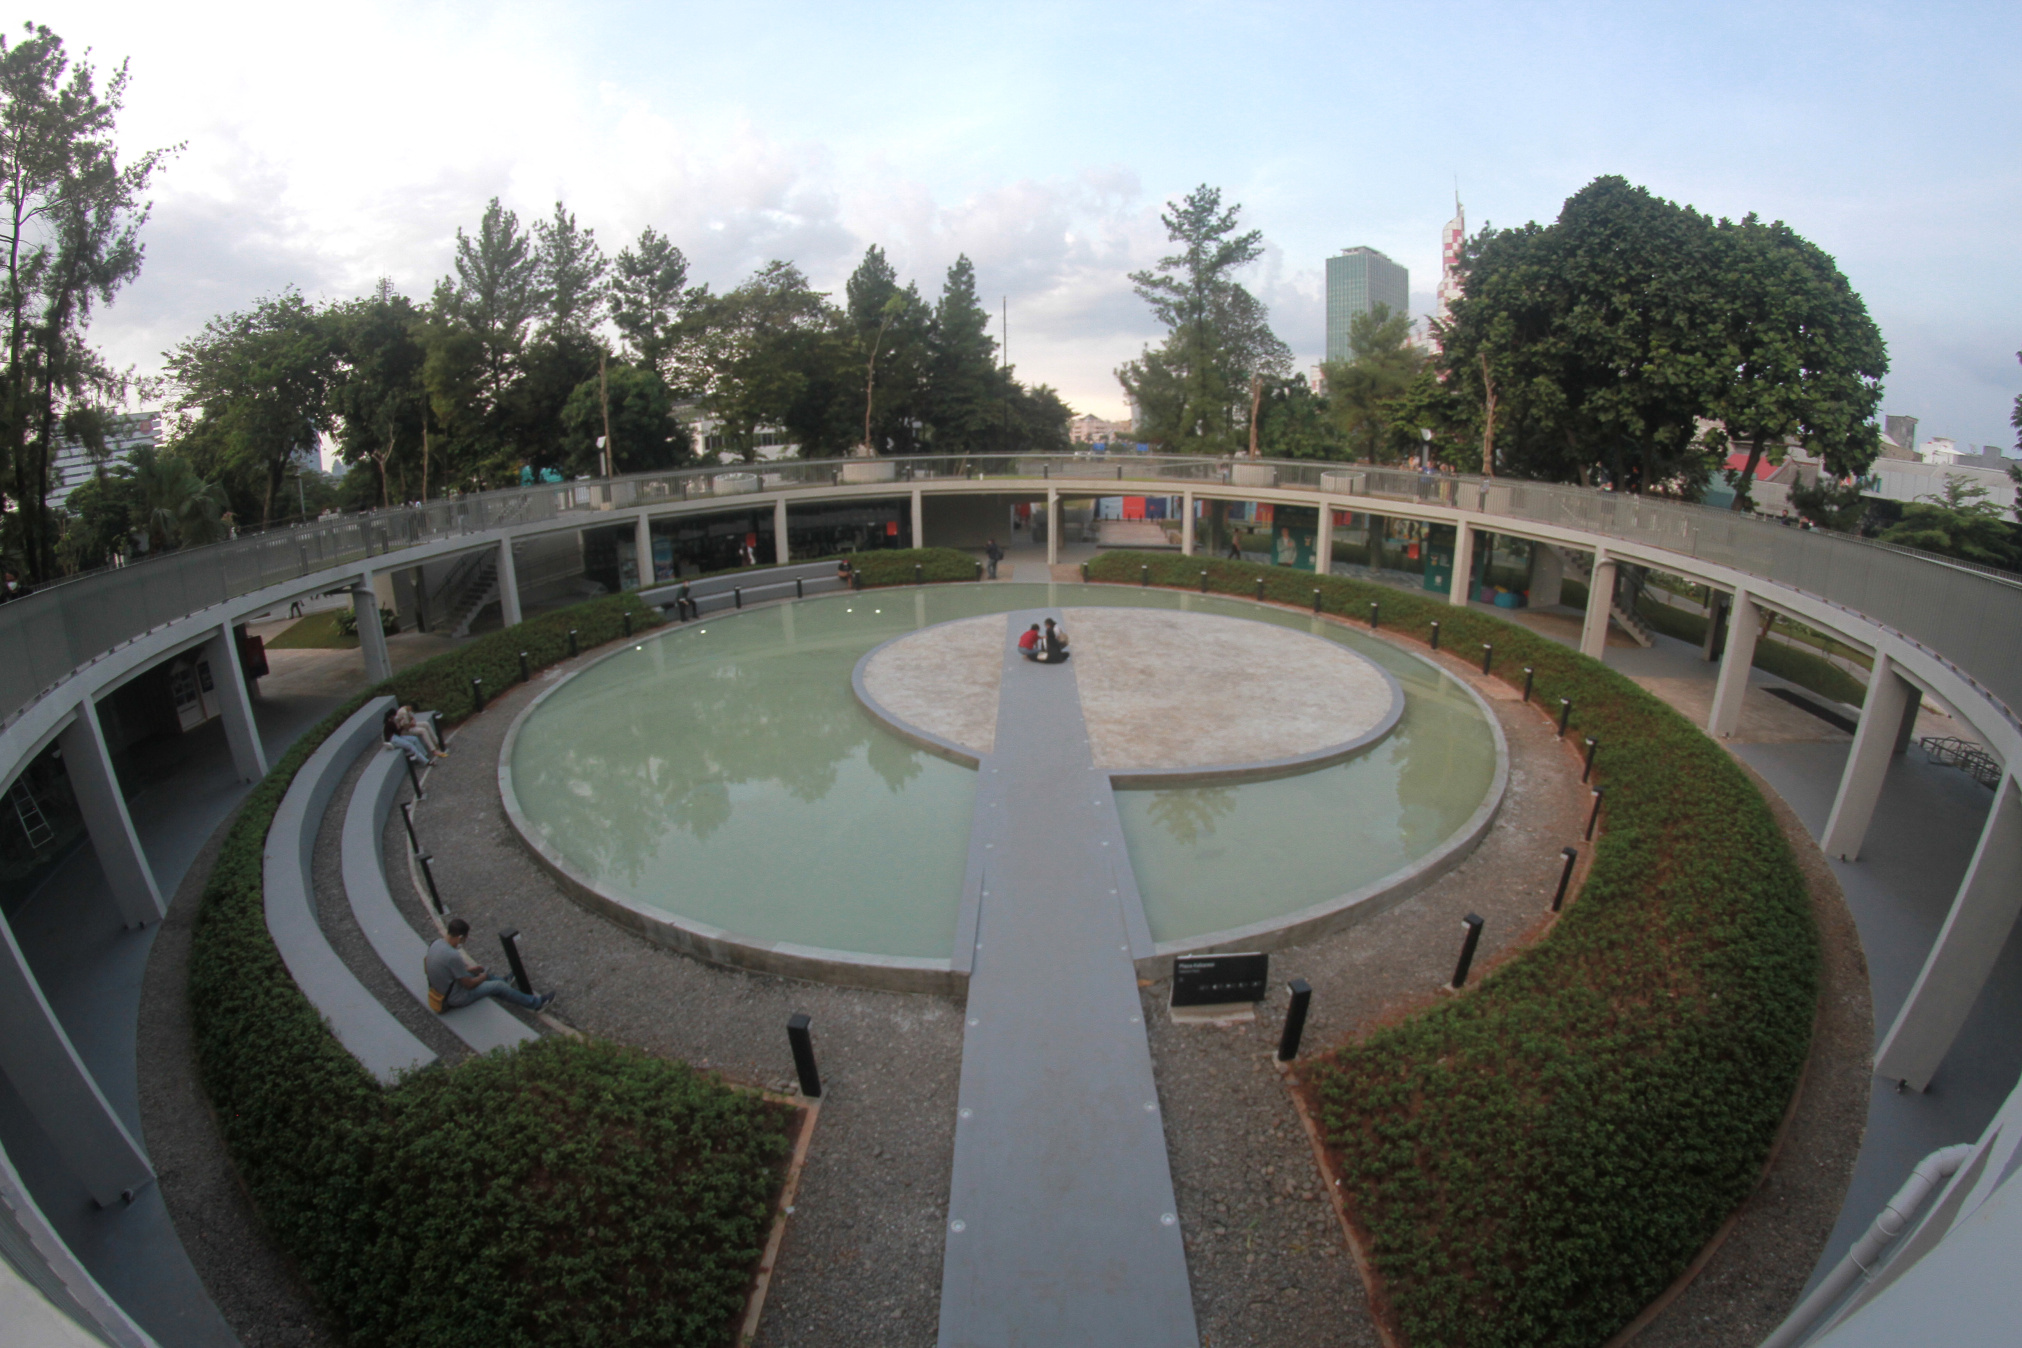 Taman baru Taman Martha Christina Tiahahu di kawasan Blok M (Ashar/SinPo.id)